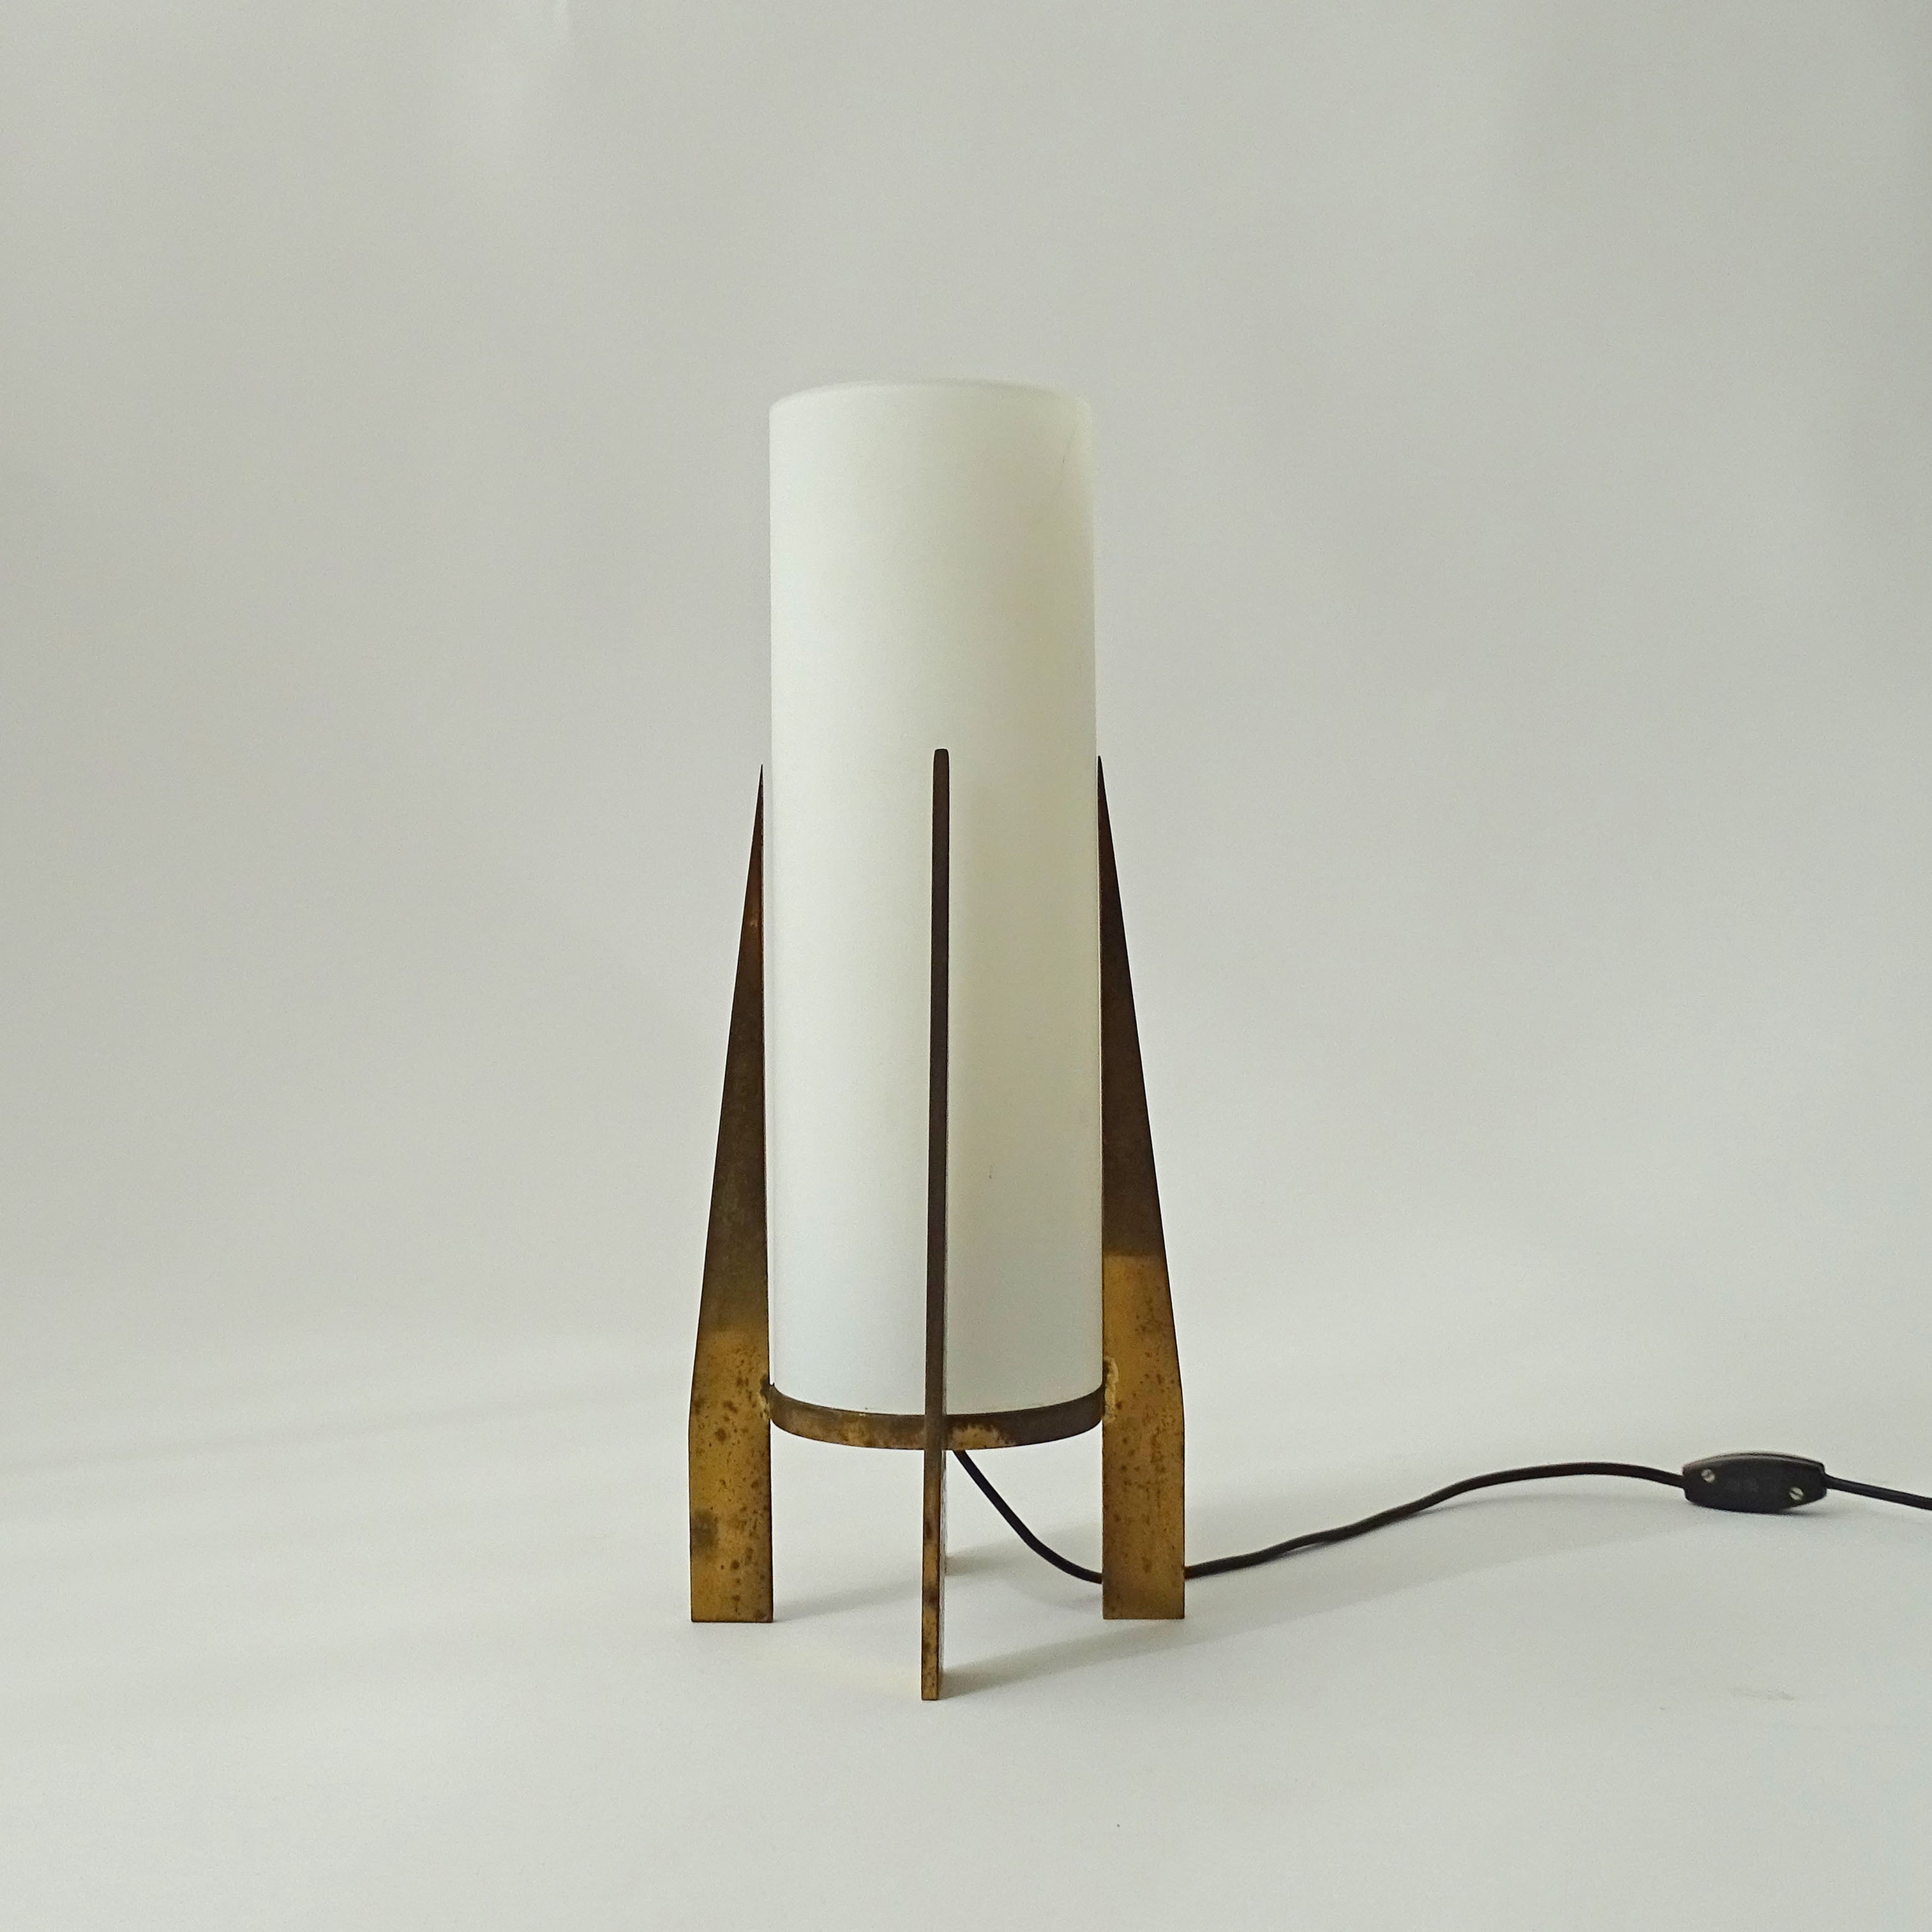 Splendide lampe de table de forme architecturale par Stilnovo.
Laiton et verre opalin.
Italie années 1950